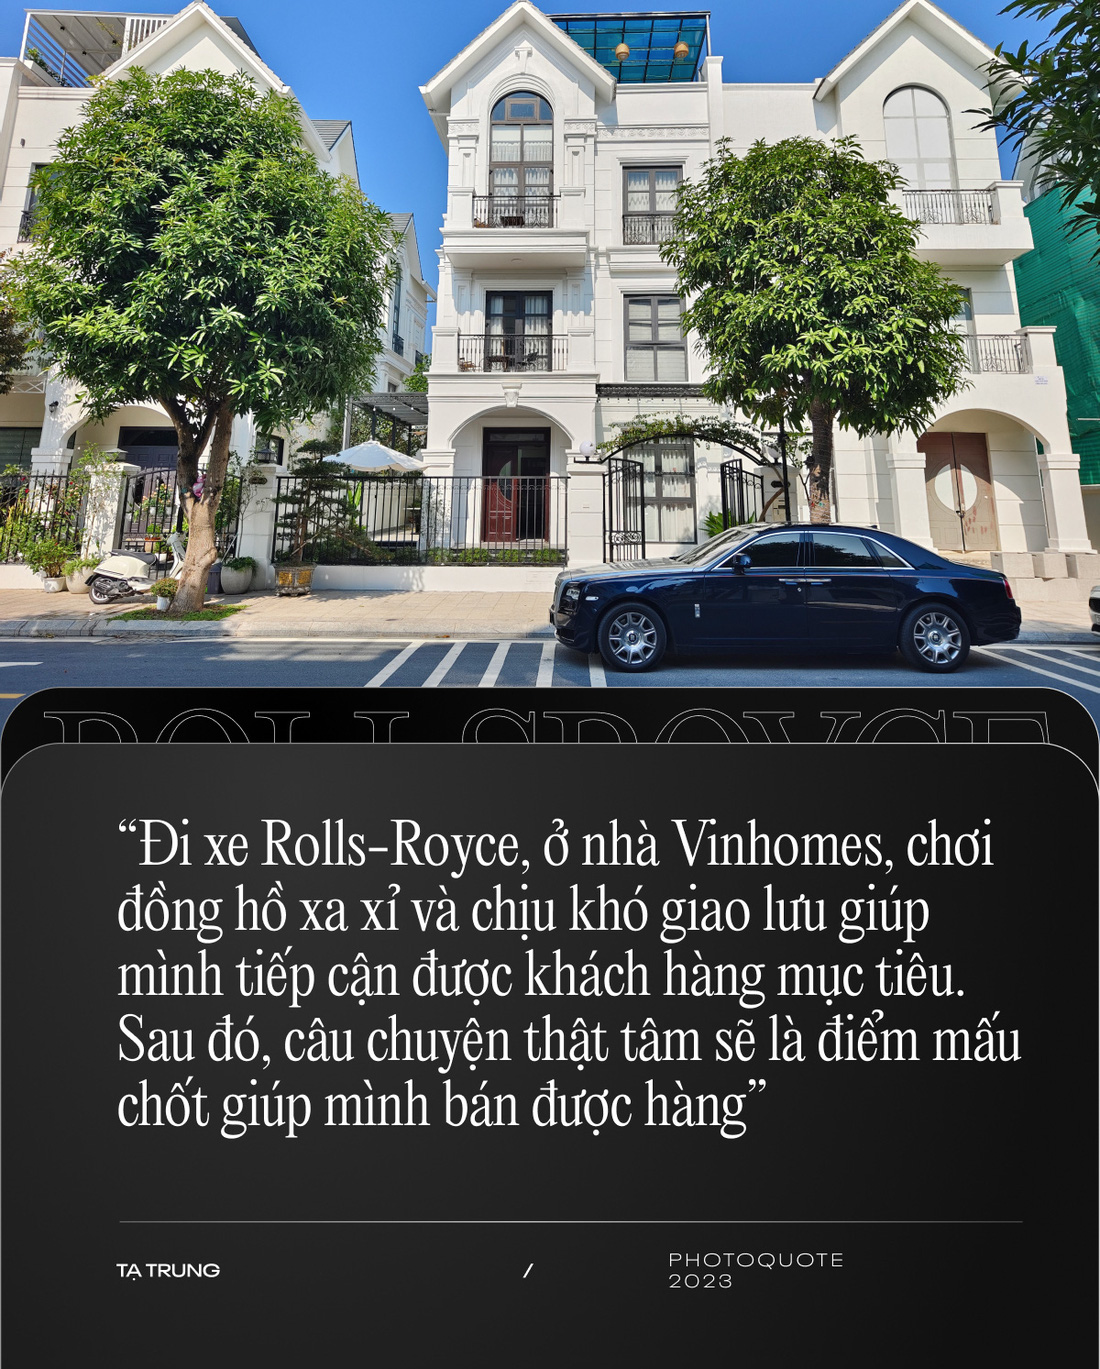 Bán Rolls-Royce cũ cho khách Việt: Nhiều người đổi bằng bất động sản, đồng hồ, kim cương- Ảnh 9.